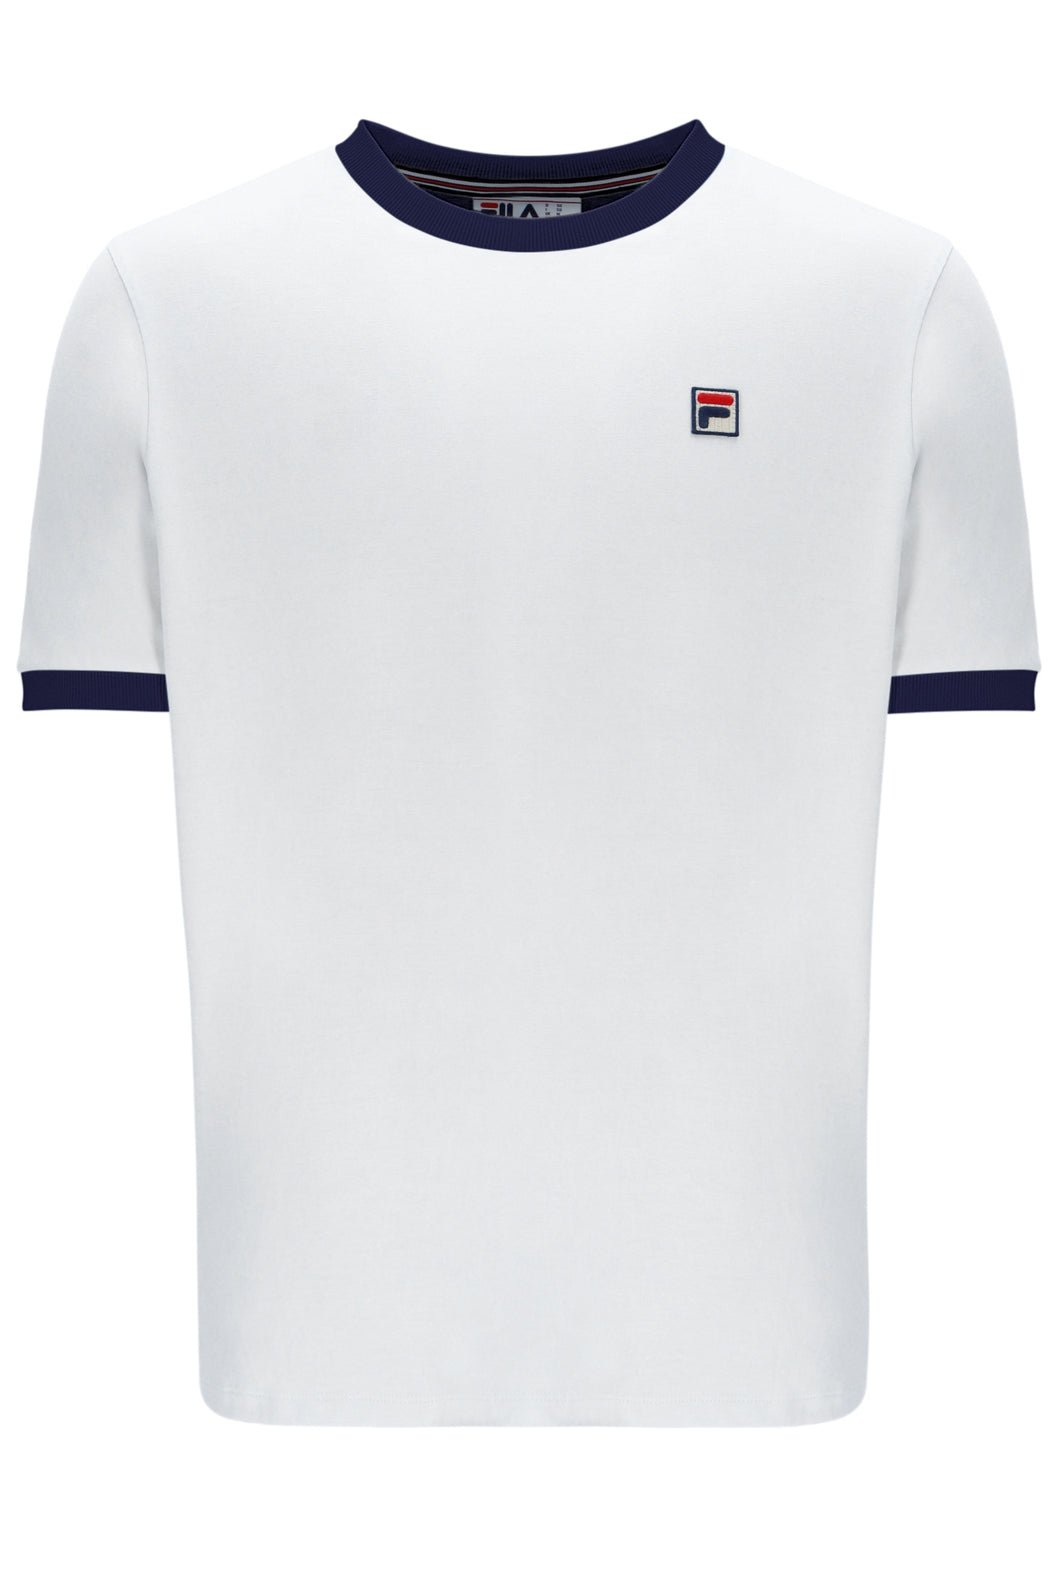 Fila Marconi T-Shirt White